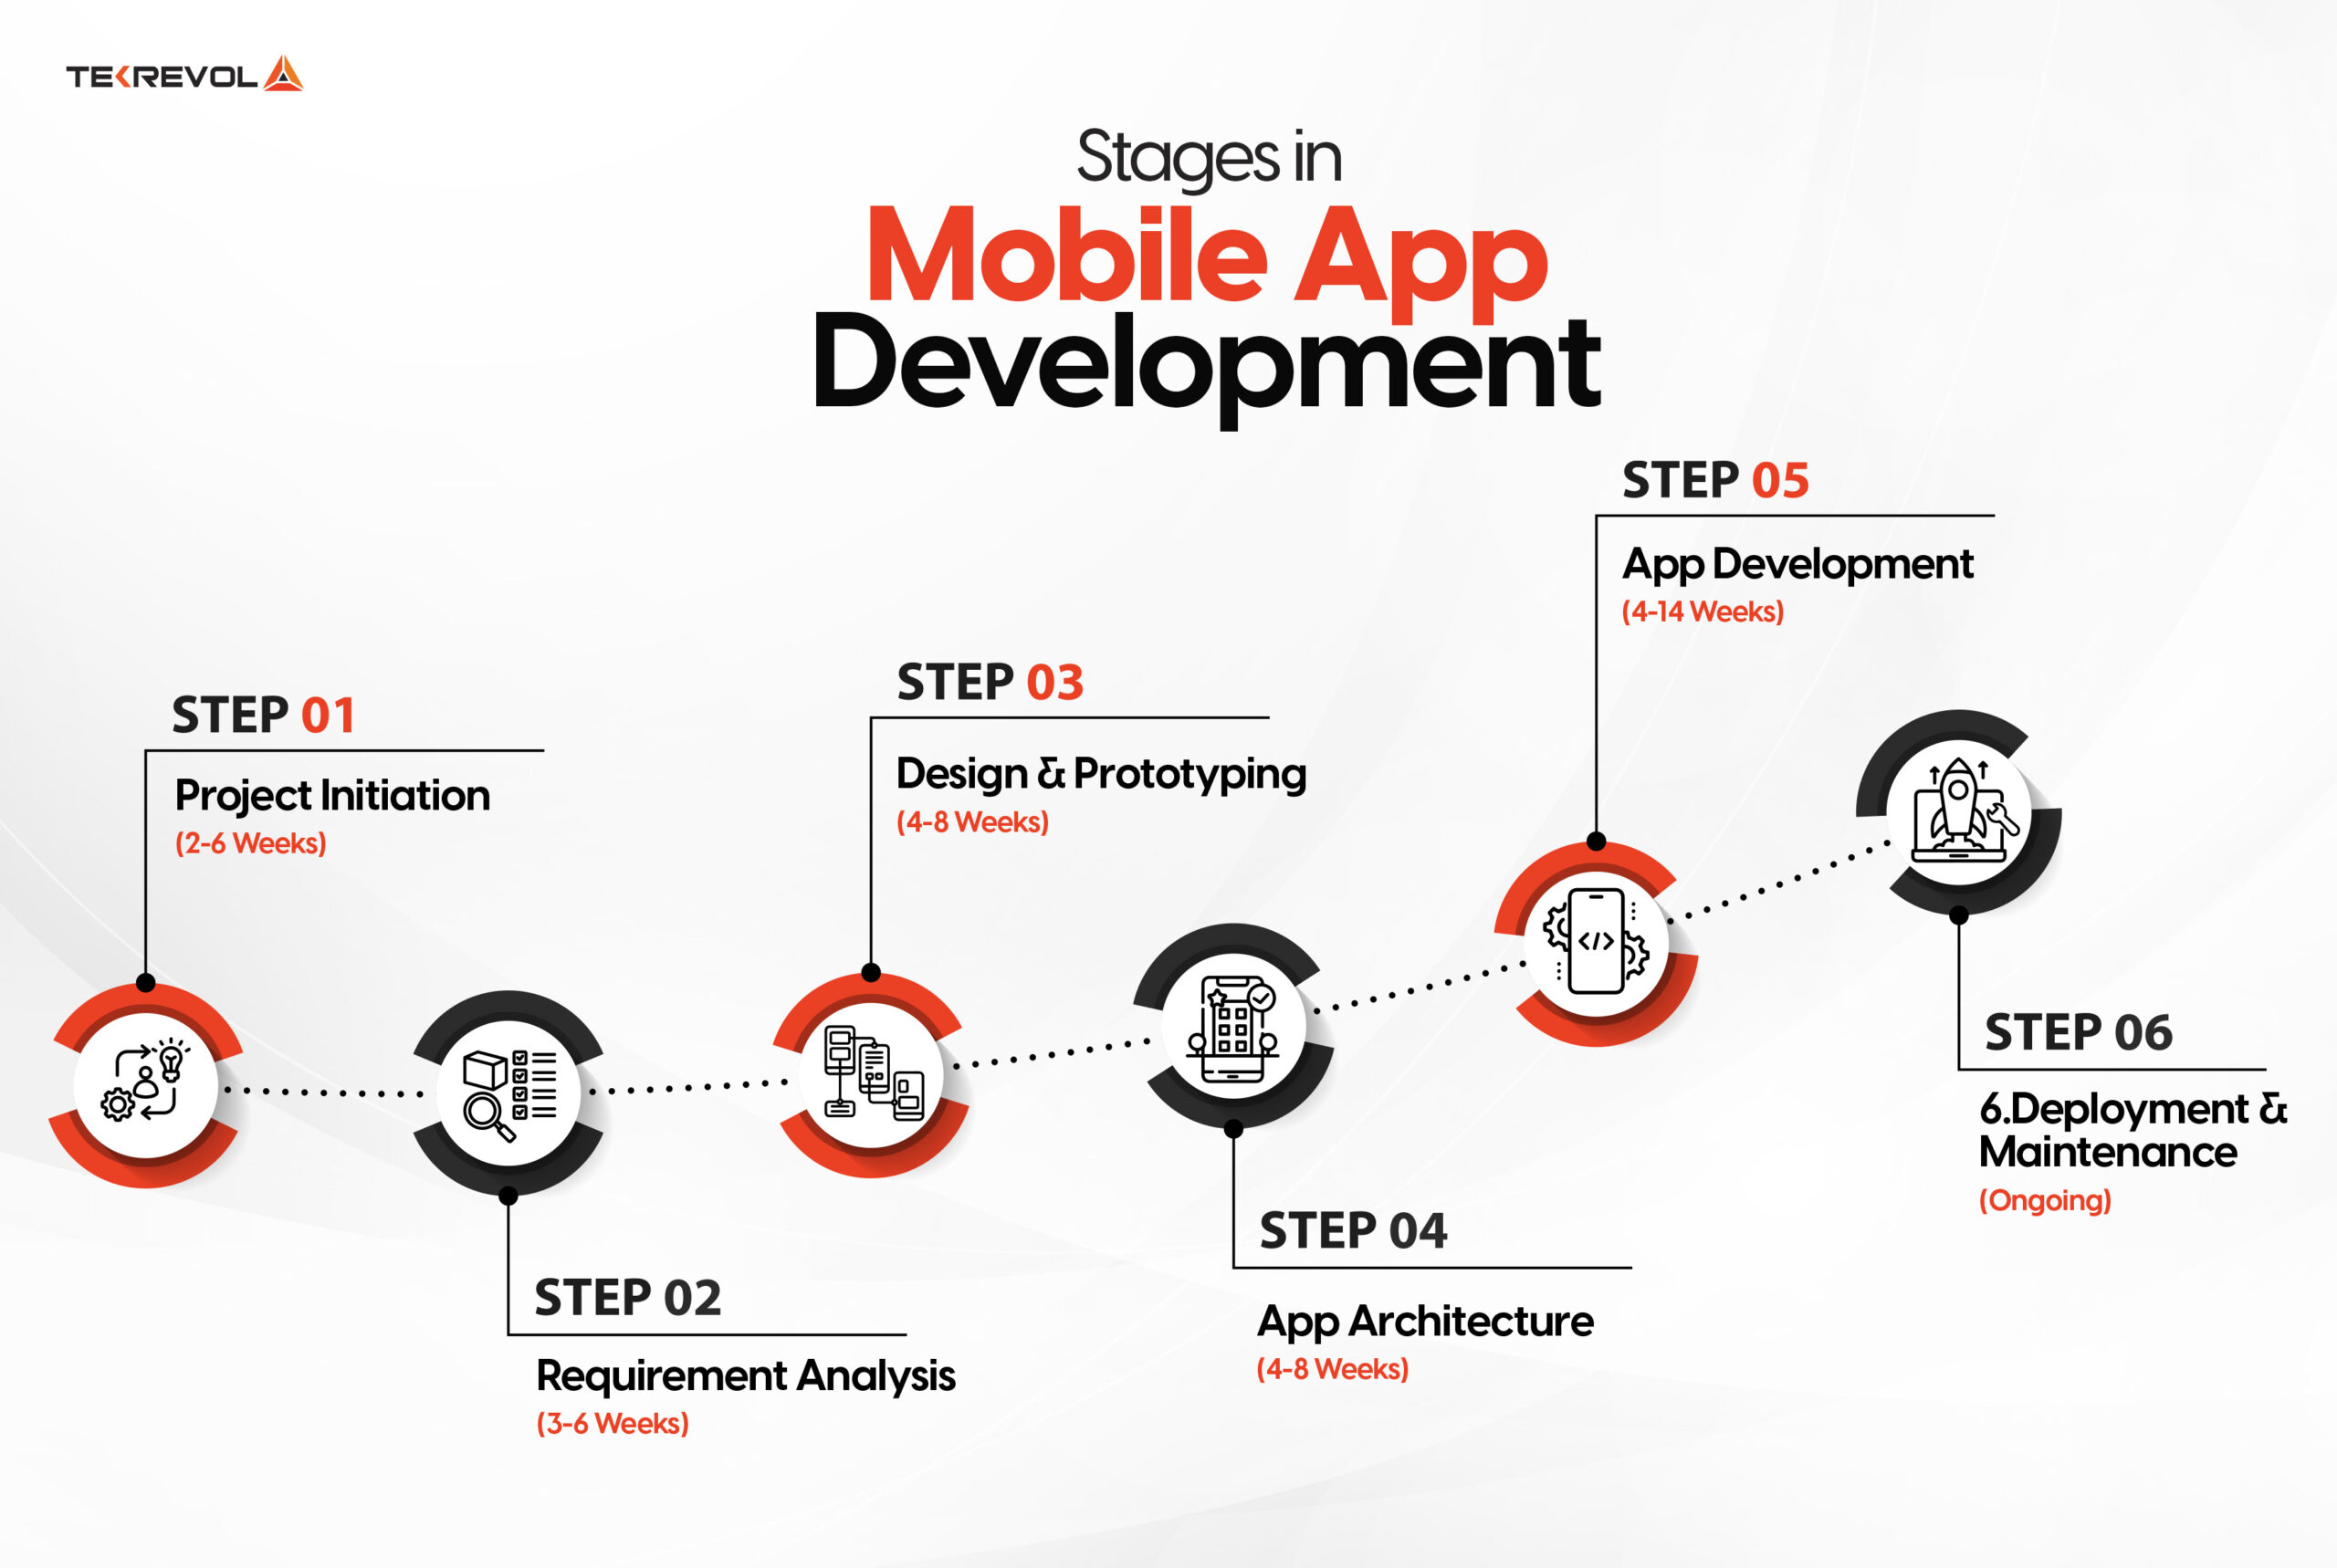 App Development Process Breakdown